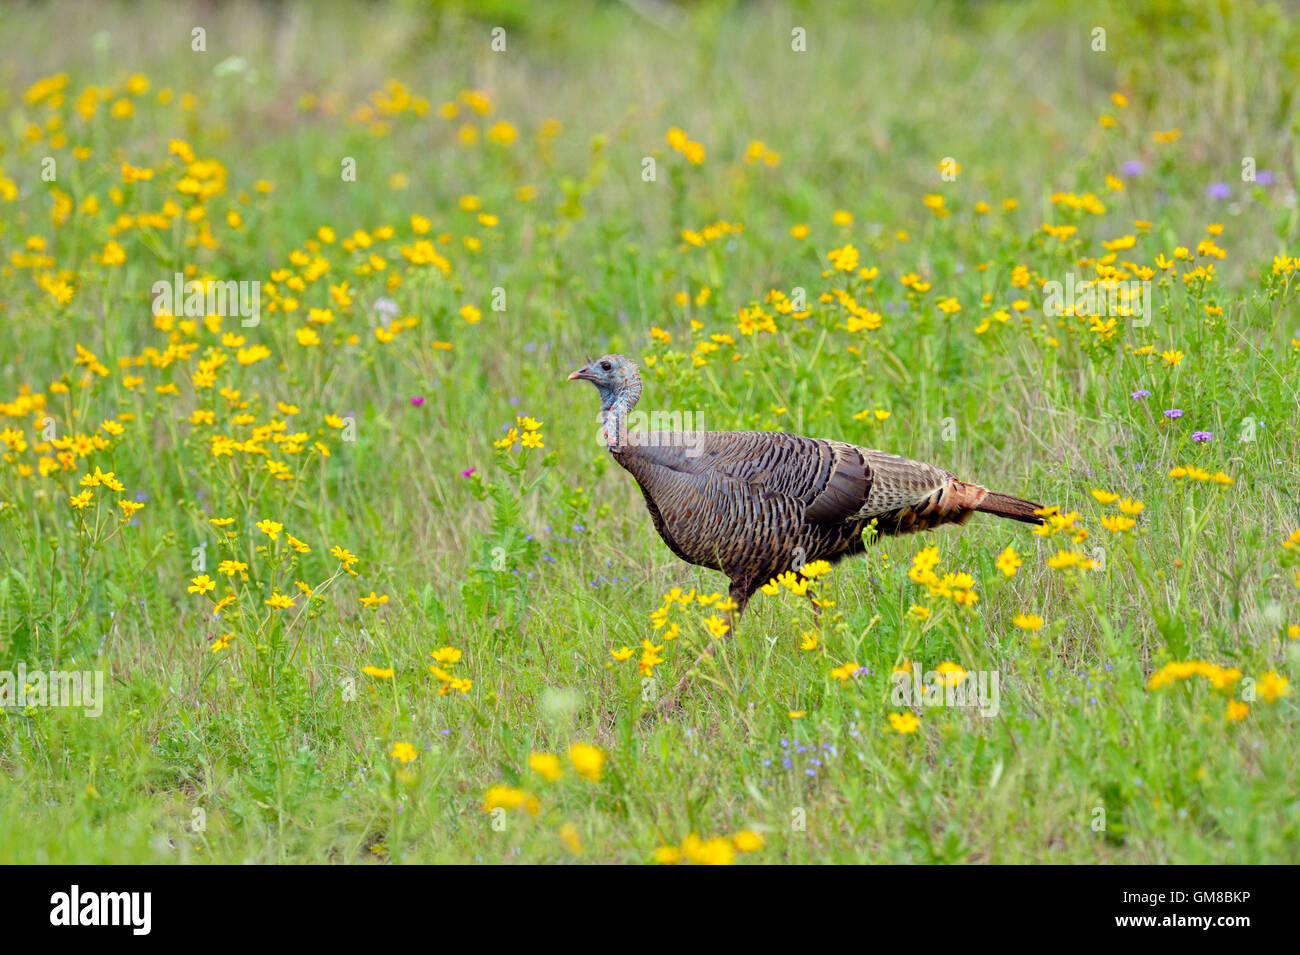 Wild Turkey (Meleagris gallopavo), Willow City, Texas, USA Stock Photo